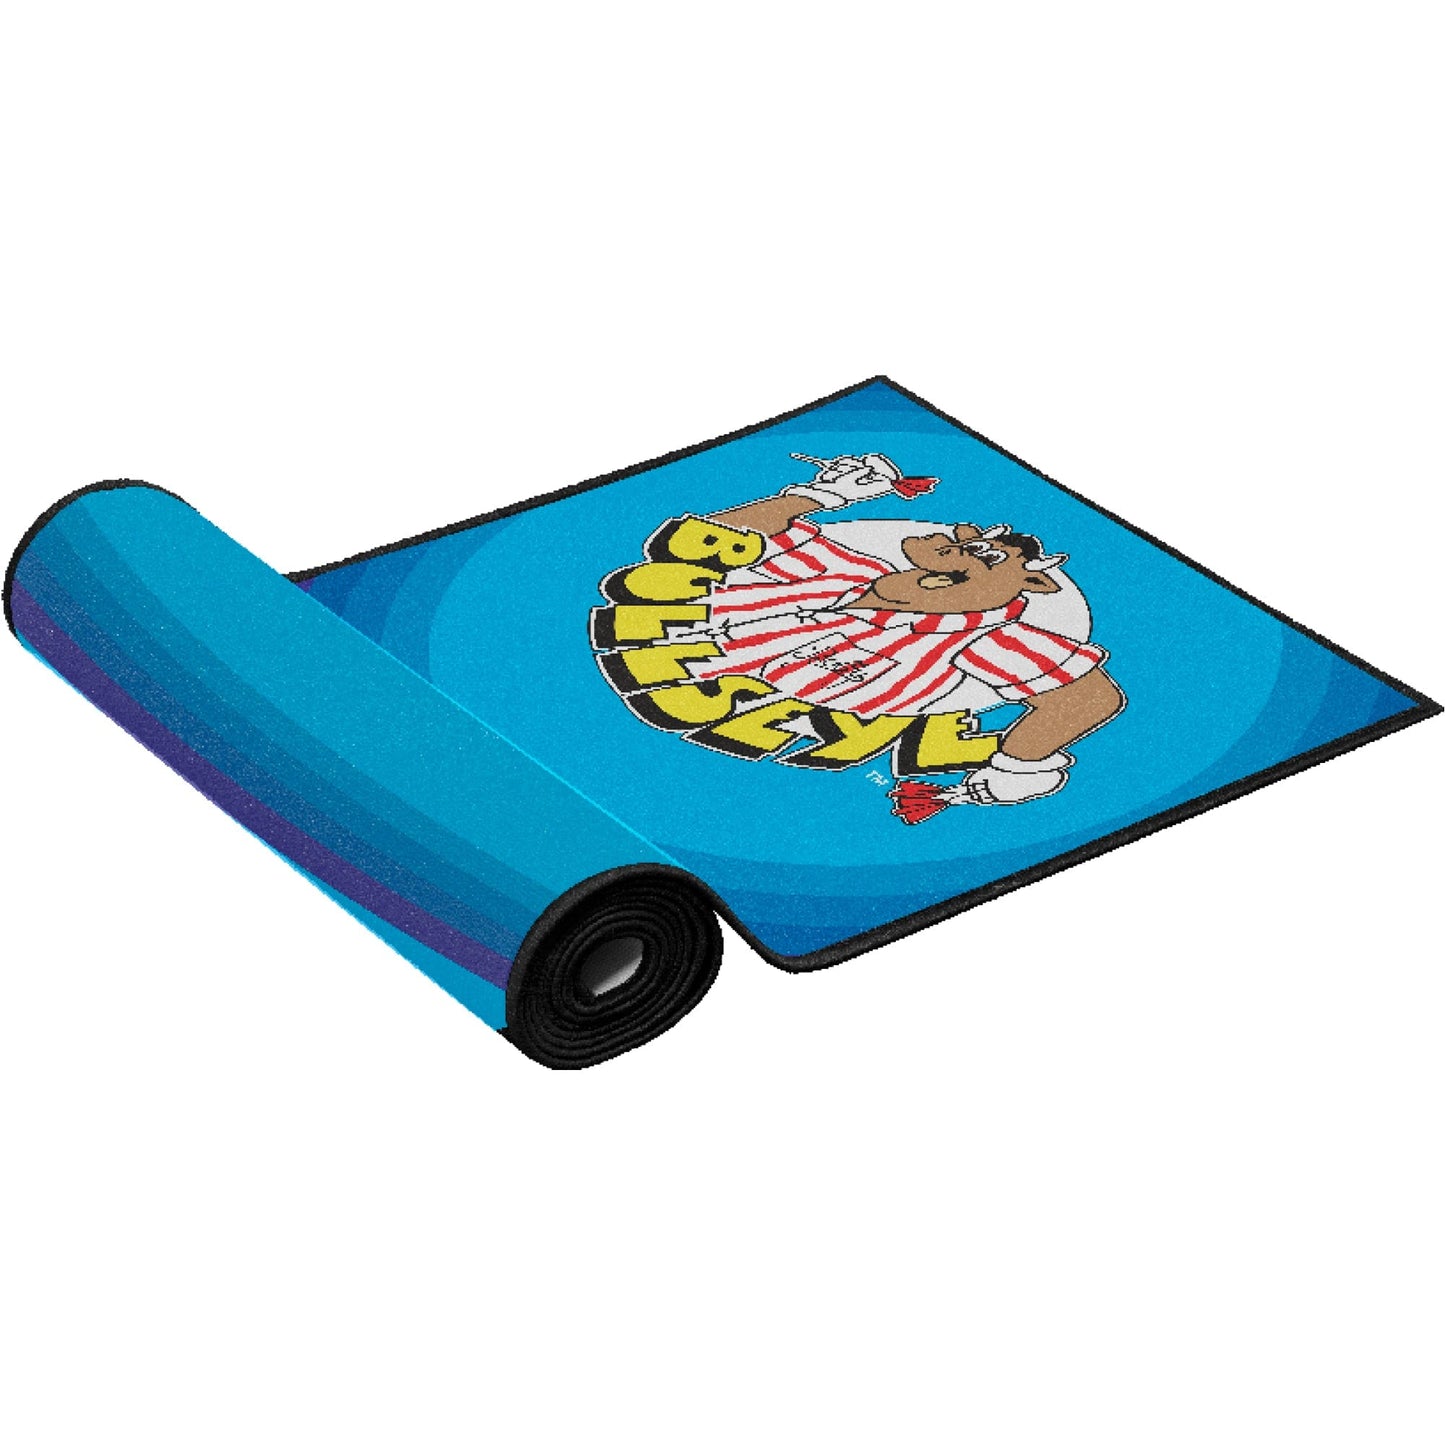 Bullseye Carpet Darts Mat - Non Slip Back - Blue with Bully Logo